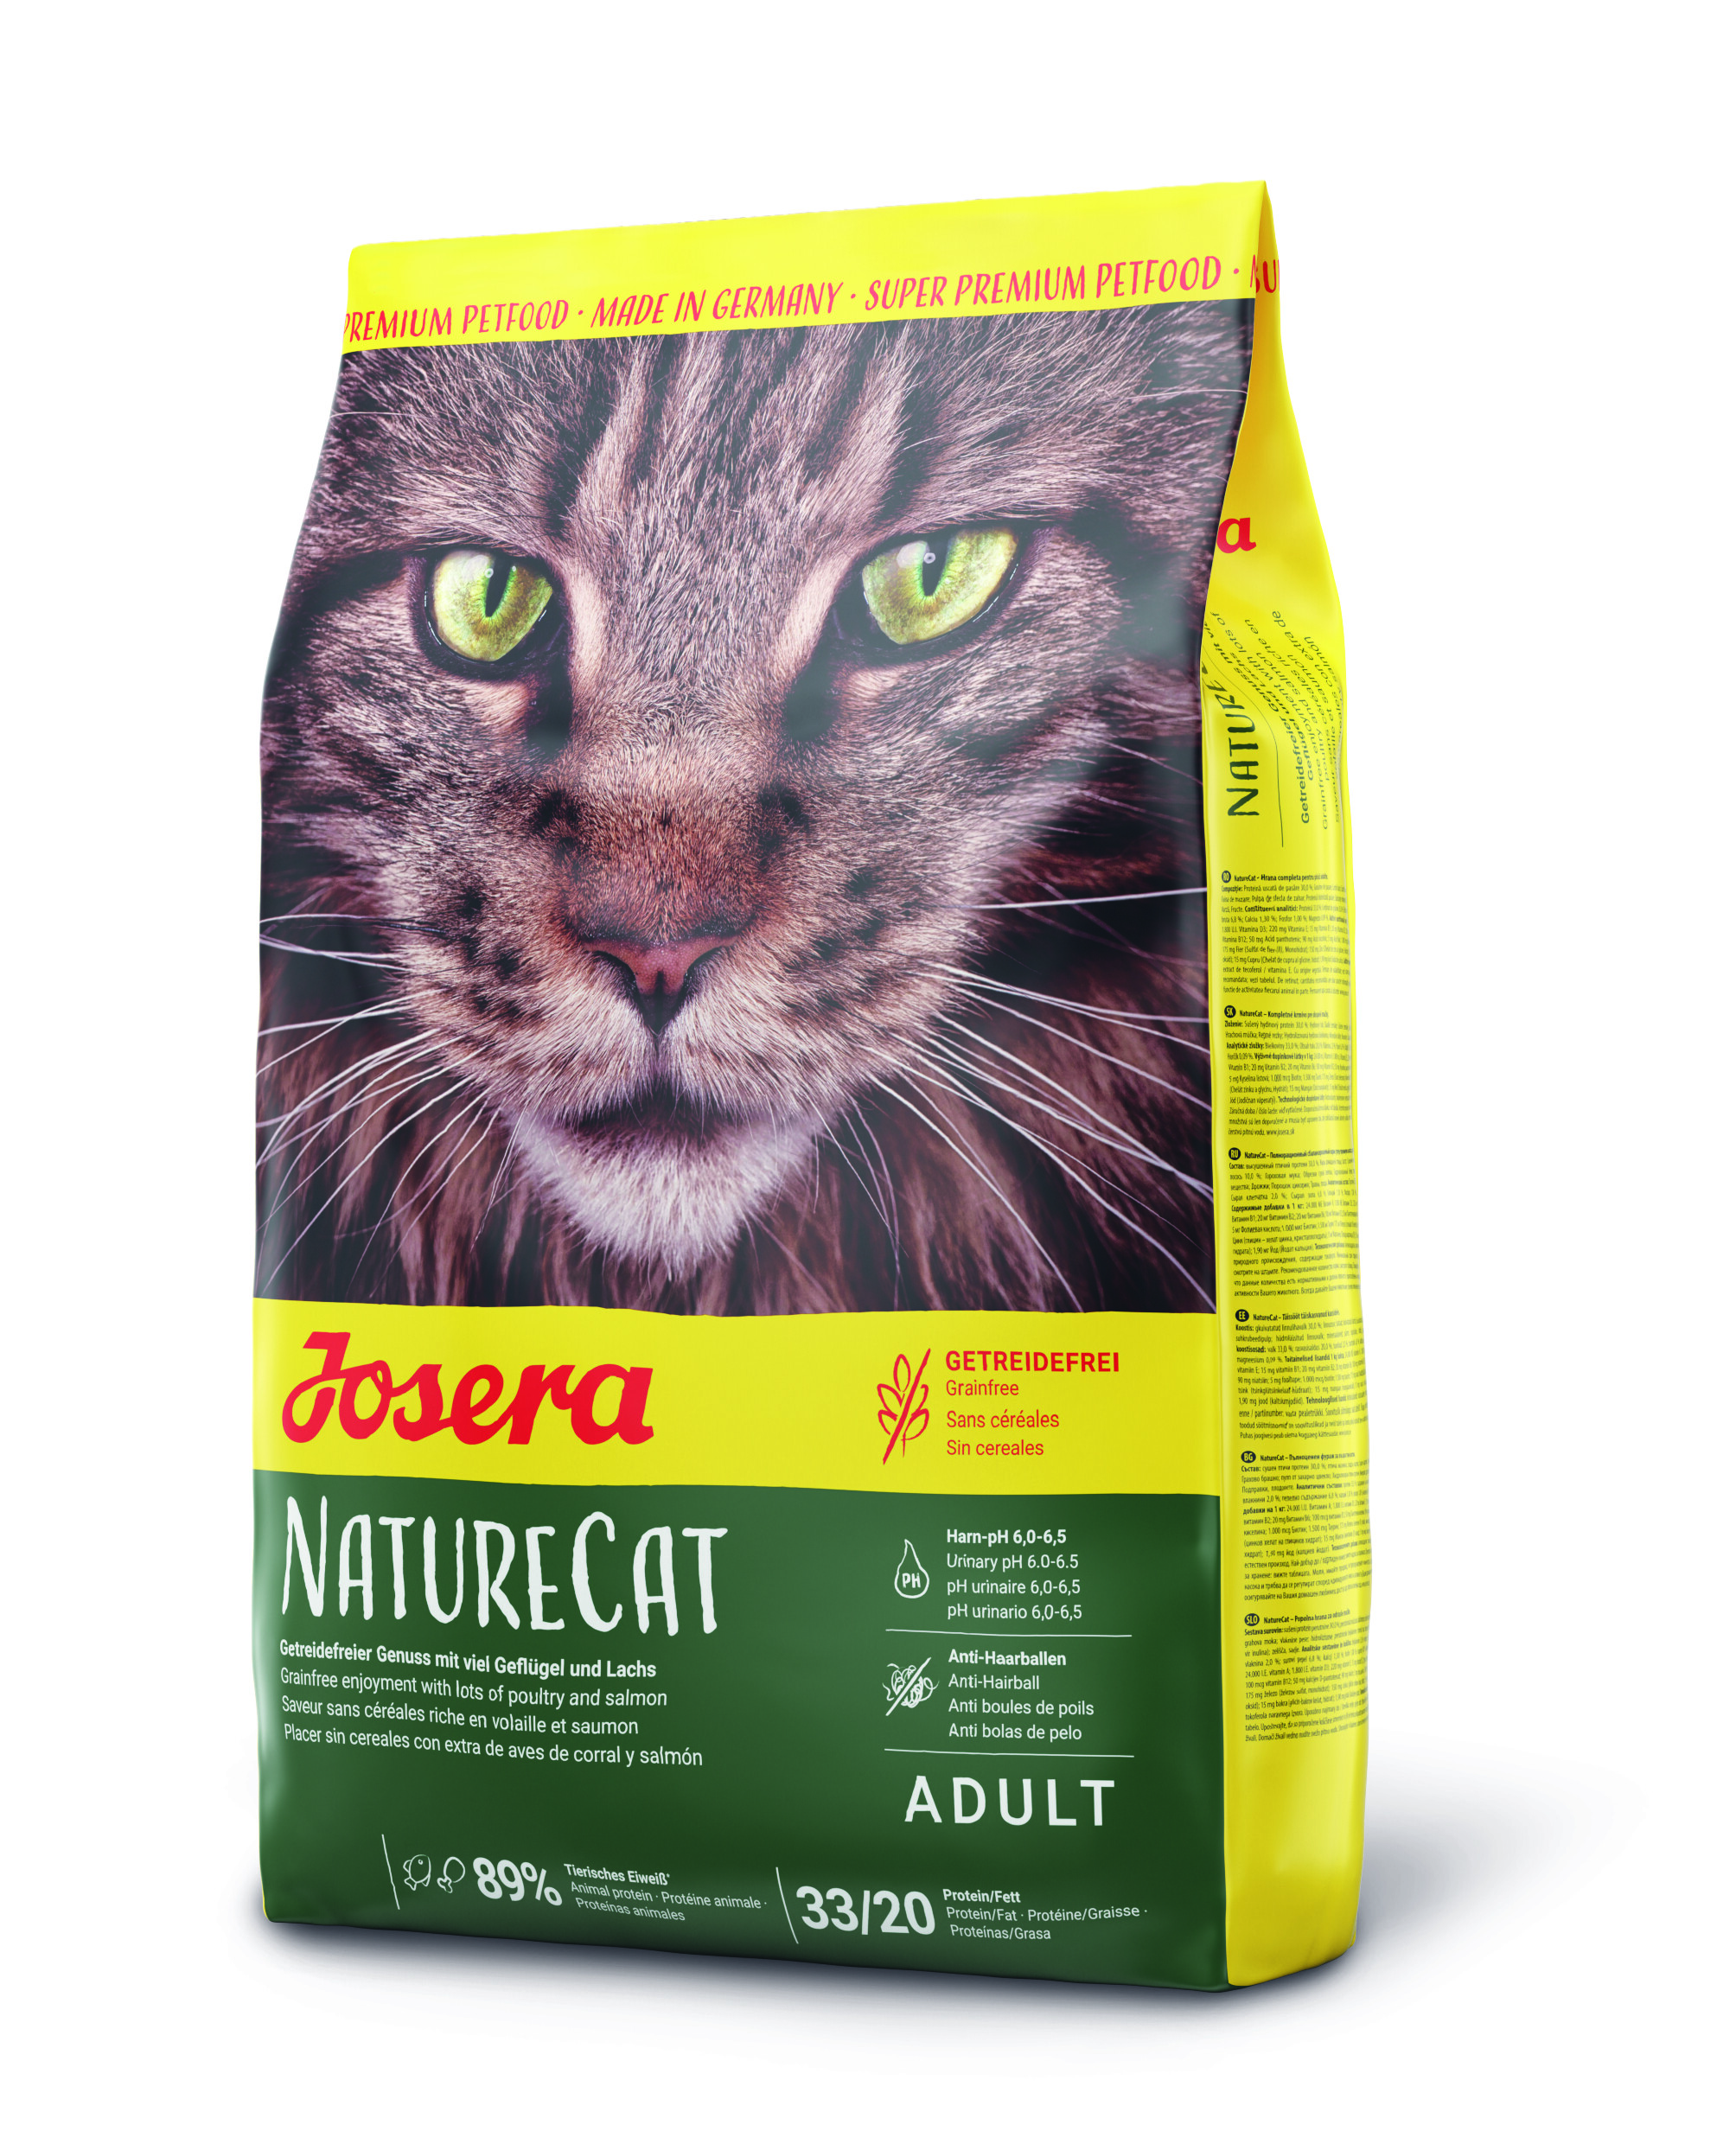 Josera NatureCat Katzenfutter Super Premium, 10kg